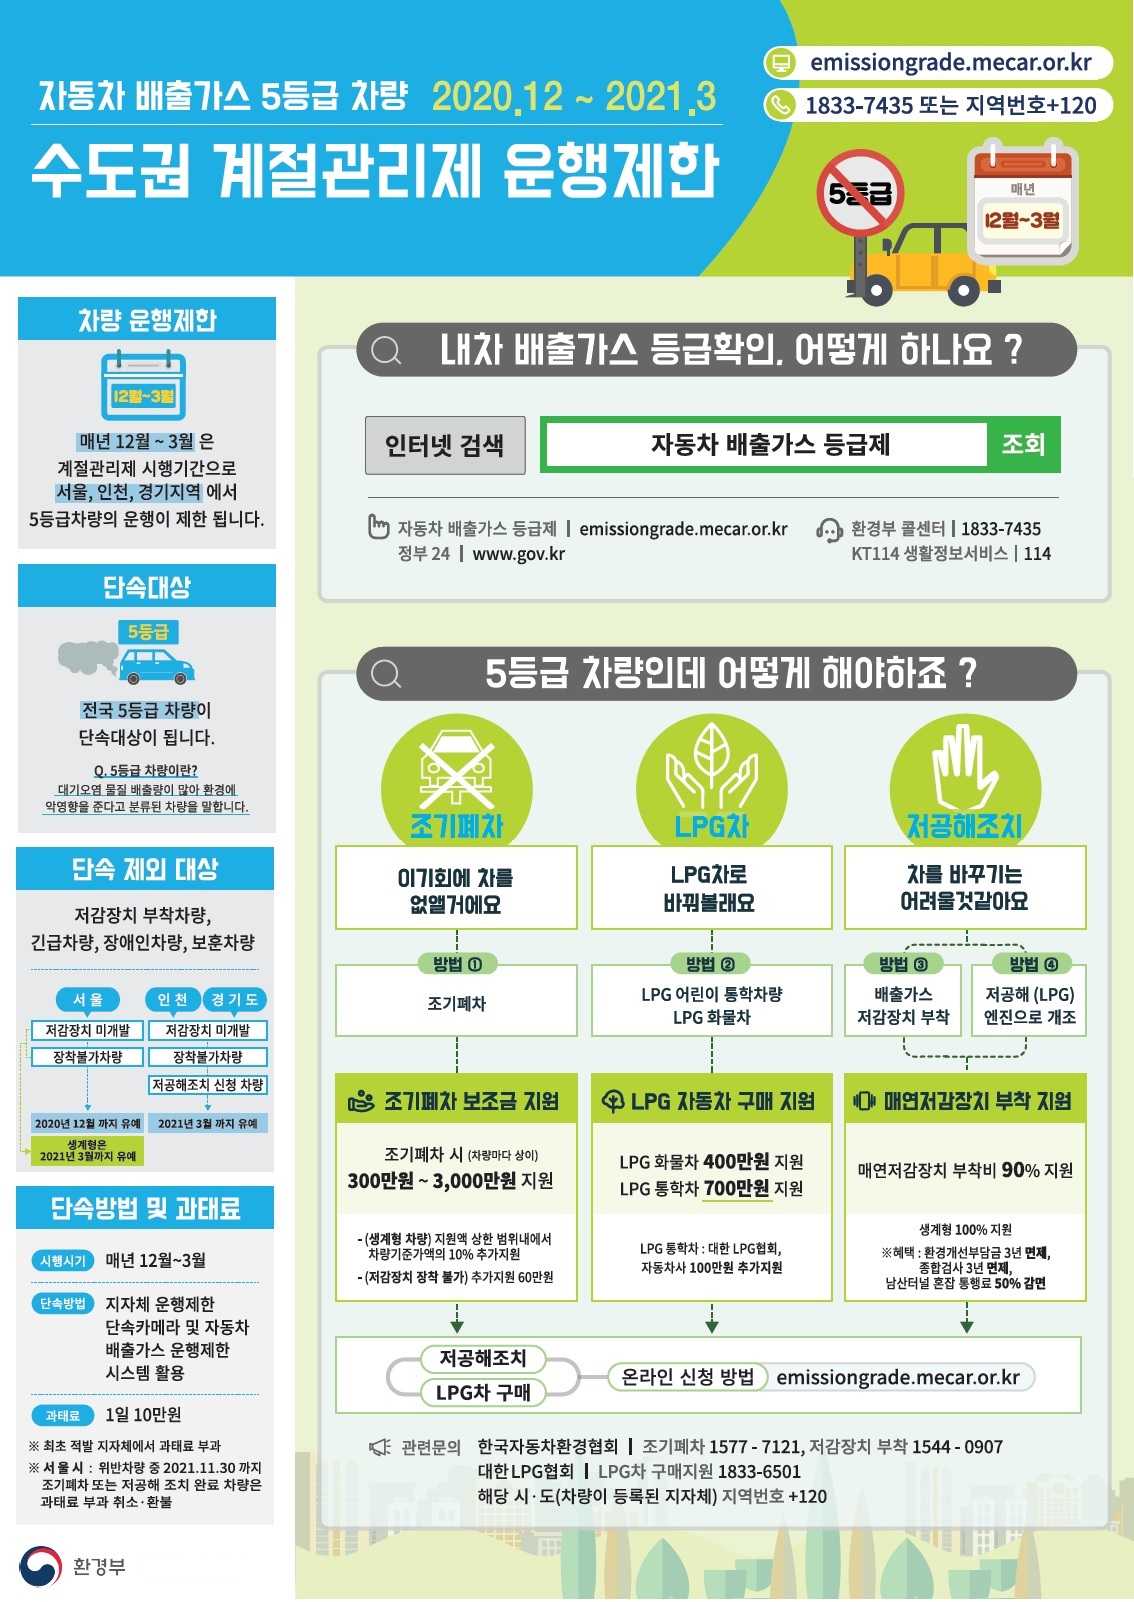 자동차 배출가스 5등급 차량 2020.12 ~2021.3 수도권 계절관리제 운행제한 emissiongrade.mecar.or.kr tel:1833-7435 또는 지역번호 +120 차량 운행제한: 매년 12월 ~ 3월은 계절관리제 시행기간으로 서울, 인천, 경기지역에서 5등급차량의 운행이 제한 됩니다. 단속대상: 5등급 전국 5등급 차량이 단속대상이 됩니다. Q.5등급 차량이란? 대기오염 물질 배출량이 많아 환경에 악영향을 준다고 분류된 차량을 말합니다. 단속 제외 대상: 저감장치 부착차량, 긴급차량, 장애인차량, 보훈차량 서울 저감장치 미개발, 장착불가차량 2020년 12월까지 유예 생계형은 2021년 3월까지 유예 인천,경기도 : 저감장치 미개발 장착불가차량 저공해조치 신청 차량 2021년 3월까지 유예 단속방법 및 과태료 시행시기 매년12월 ~ 3월 단속방법 지자체 운행제한 단속카메라 및 자동차 배출가스 운행제한 시스템 활용 과태료: 1일 10만원 *최초 적발 지자체에서 과태료 부과 서울시: 위반차량 중 2021.11.30 까지 조기폐차 또는 저공해 조치 완료 차량은 과태료 부과 취소·환불 내차 배출가스 등급확인. 어떻게 하나요? 인터넷 검색 자동차 배출가스 등급제 조회 자동차 배출가스 등급제 emissiongrade.mecar.or.kr 환경부 콜센터 | 1833-7435 정부 24| www.gov.kr kt114생활정보서비스 | 114 5등급 차량인데 어떻게 해야하죠? 조기폐차 이기회에 차를 없앨거예요 방법1.조기폐차 조기폐차 보조금 지원 조기폐차 시 300만원 ~ 3,000만원 지원 - (생계형 차량)지원에 상황 범위내에서 차량기준가액의 10%추가지원 -(저감장치 장착 불가)추가지원 60만원 LPG차 - LPG차로 바꿔볼래요 방법2. LPG어린이 통학차량 LPG화물차 LPG자동차 구매 지원 LPG화물차 400만원 지원 LPG 통학차 700만원 지원 LPG통학차: 대한 LPG협회, 자동차사 100만원 추가지원 저공해조치 - 차를 바꾸기는 어려울 것 같아요 방법3.배출가스 저감장치 부착 방법4.저공해(LPG)엔진으로 개조 매연저감장치 부착 지원 매연저감장치 부착비 90%지원 생계형 100%지원 *혜택: 환경개선부담금 3년 면제, 종합검사 3년 면제, 남산터널 혼잡 통행료 50%감면 저공해조치 LPG차 구매 온라인 신청 방법 emissiongrade.mecar.or.kr 관련문의 한국자동차환경협회 | 조기혜차 1577-7121, 저감장치 부착 1544-0907 대한LPG협회 | LPG 구매지원 1833-6501 해당 시·도 (차량이 등록된 지자체) 지역번호 + 120